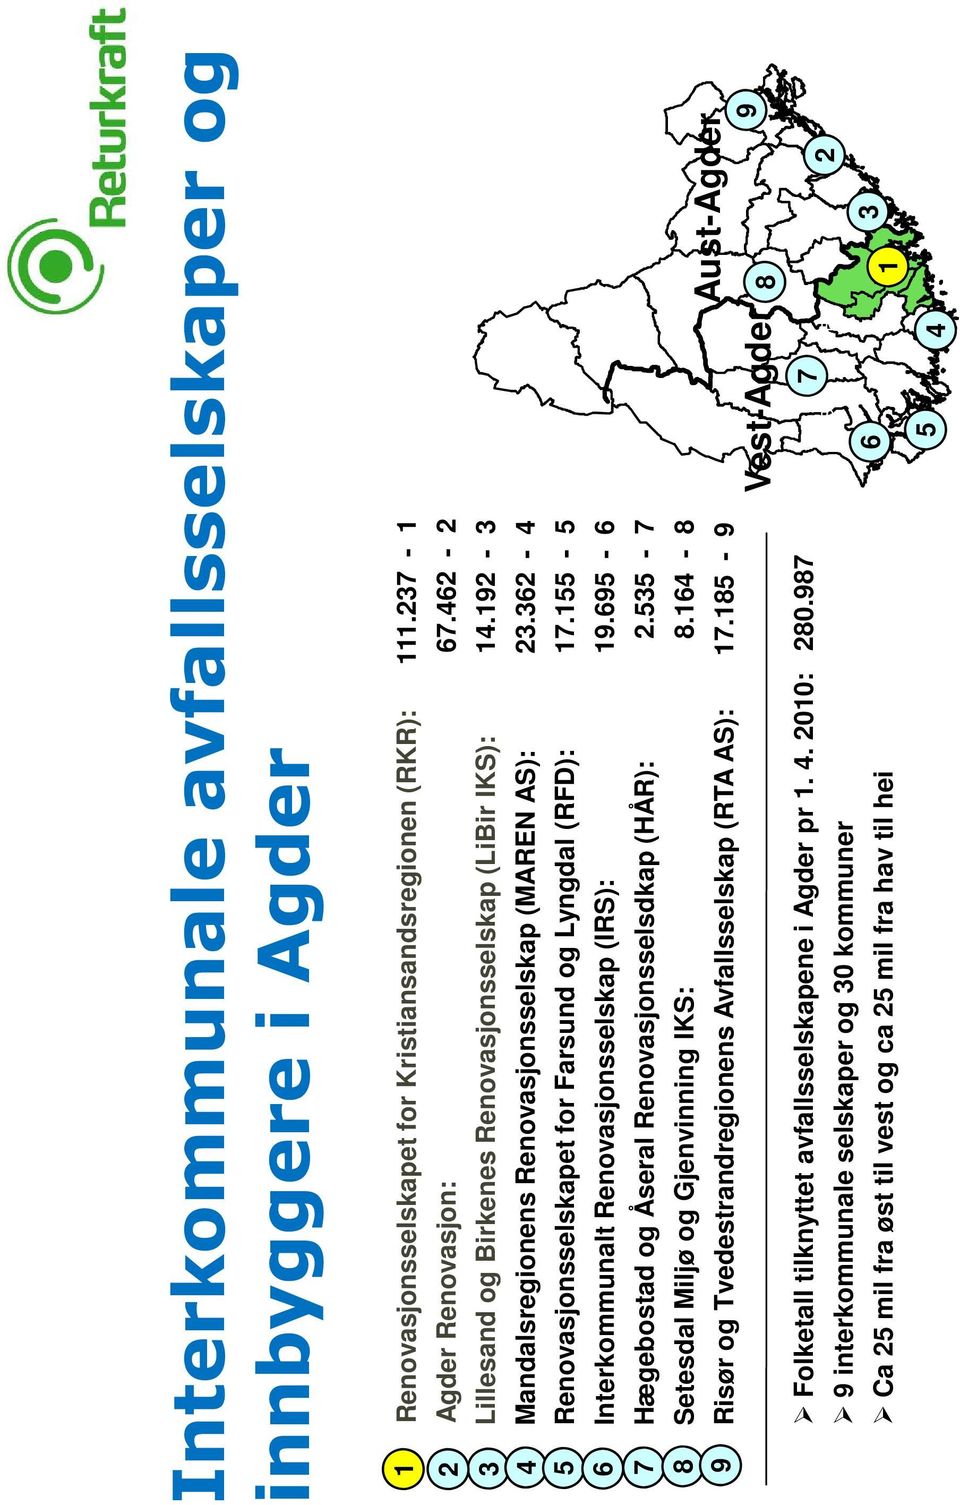 155-5 Interkommunalt Renovasjonsselskap (IRS): 19.695-6 Hægebostad og Åseral Renovasjonsselsdkap (HÅR): 2.535-7 Setesdal Miljø og Gjenvinning IKS: 8.